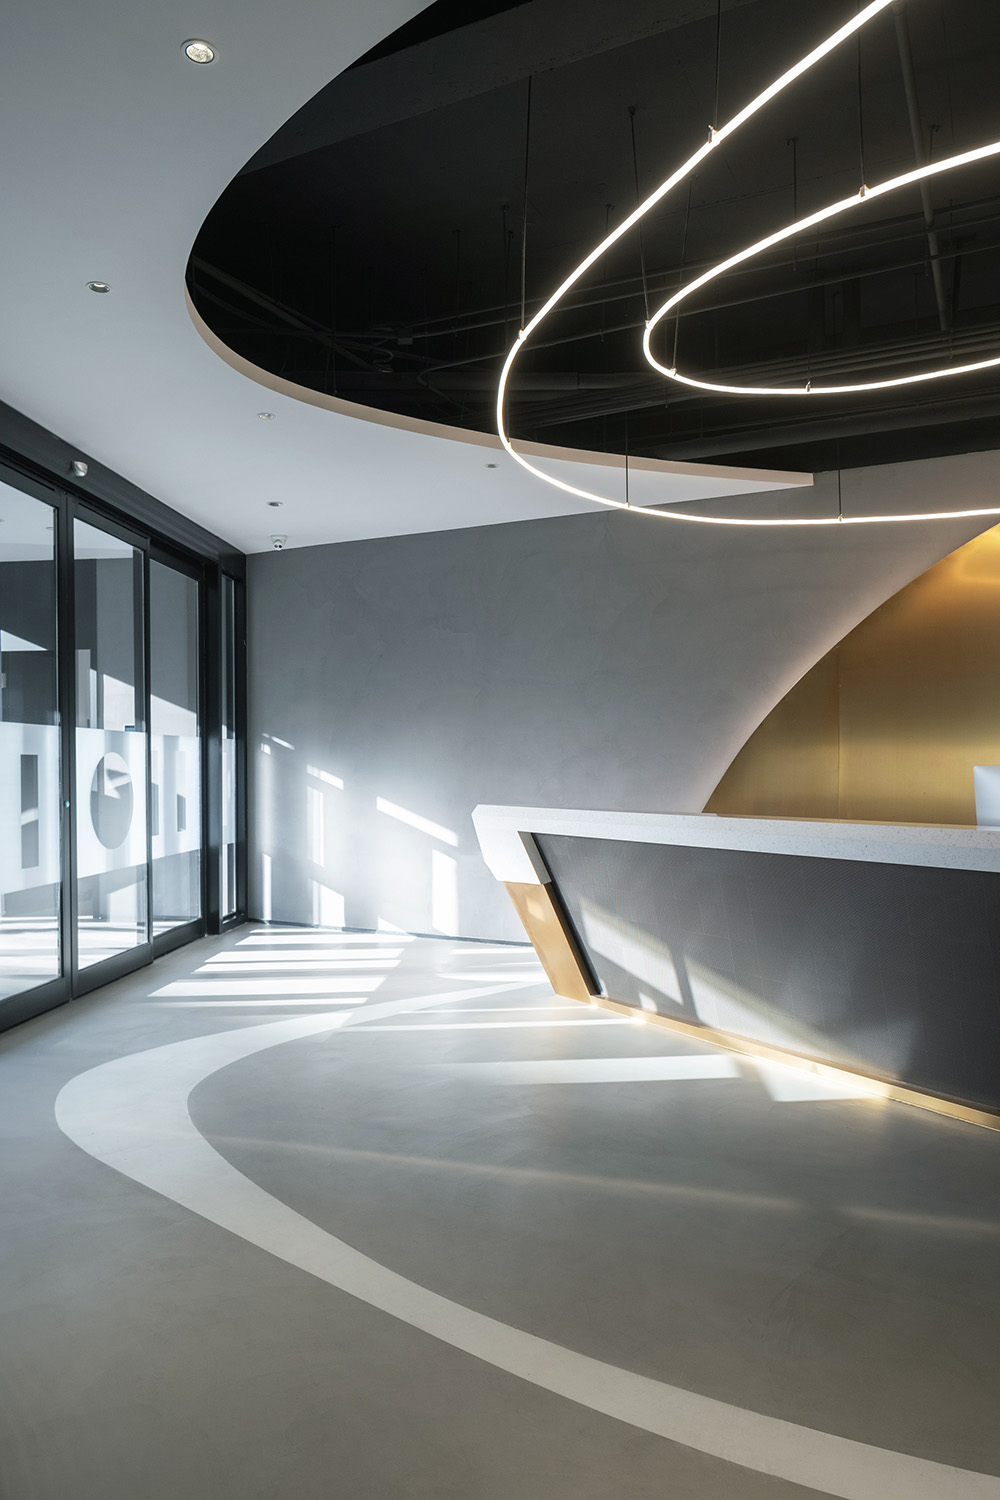 无限可能的世界 某影视公司北京办公室设计欣赏